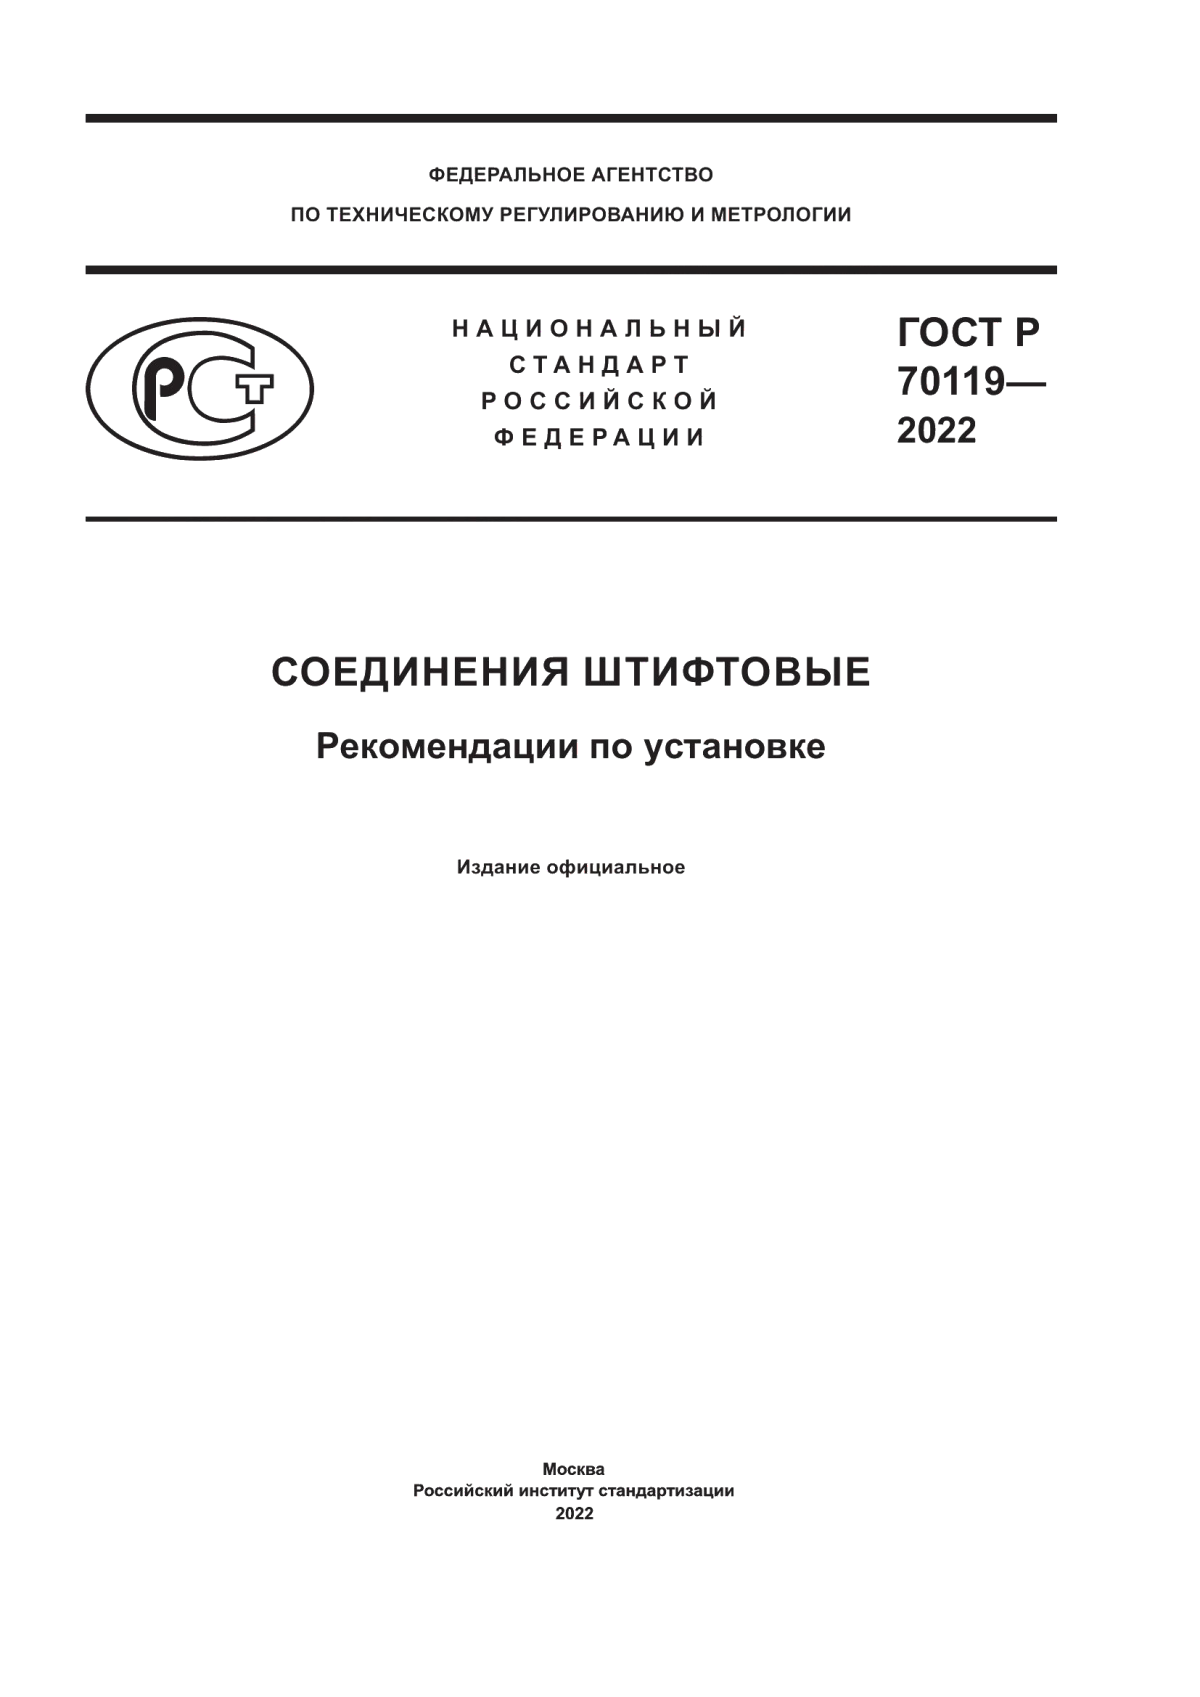 ГОСТ Р 70119-2022 Соединения штифтовые. Рекомендации по установке